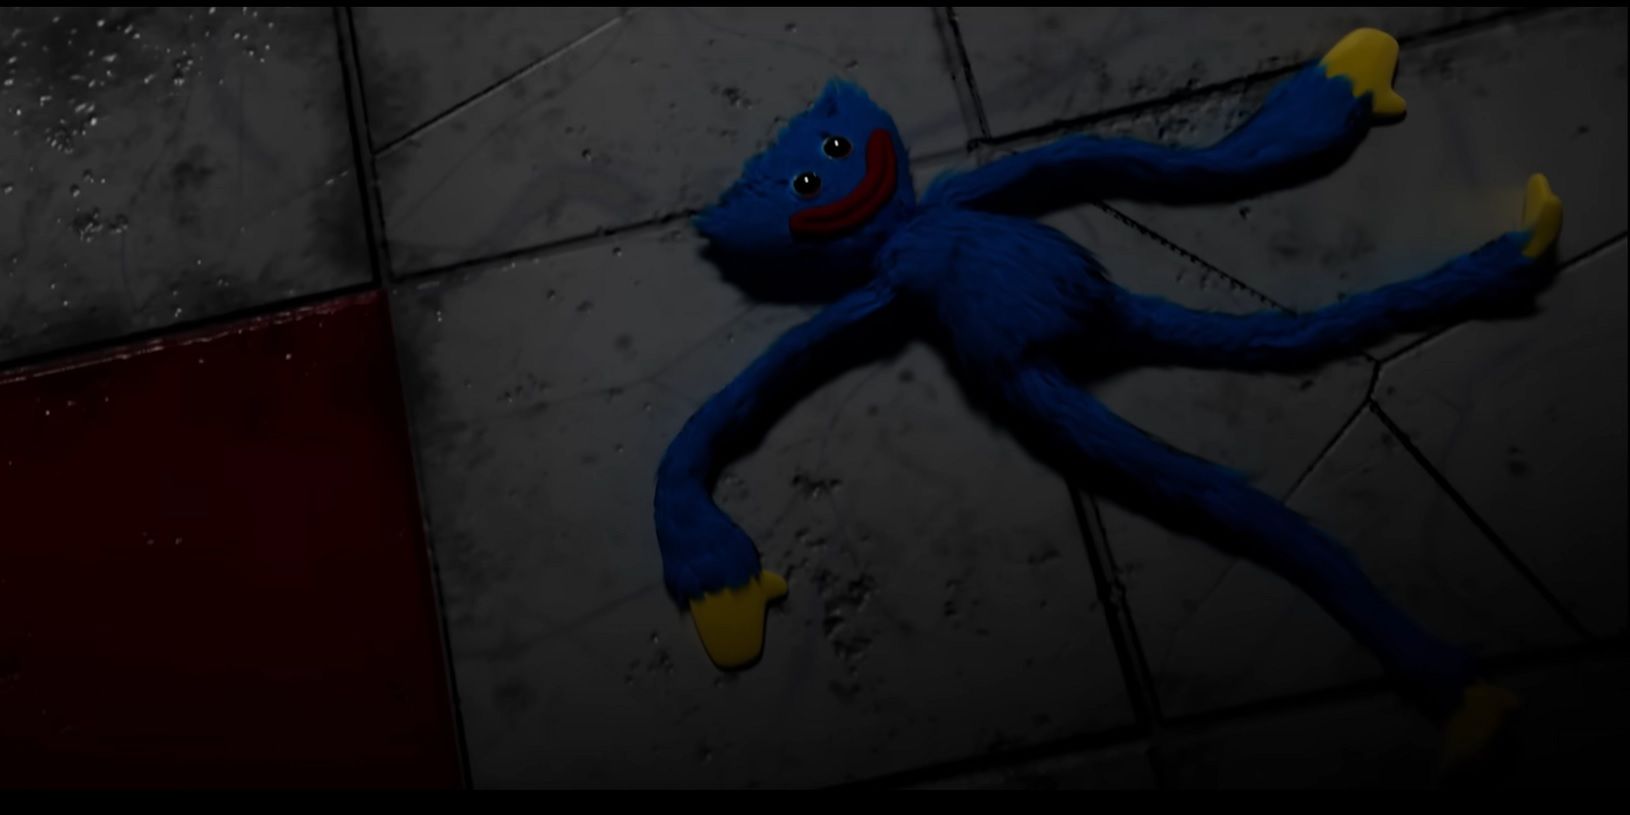 Poppy Playtime Ch. 3 Teaser Trailer Lore: Dark Secrets, New Monsters